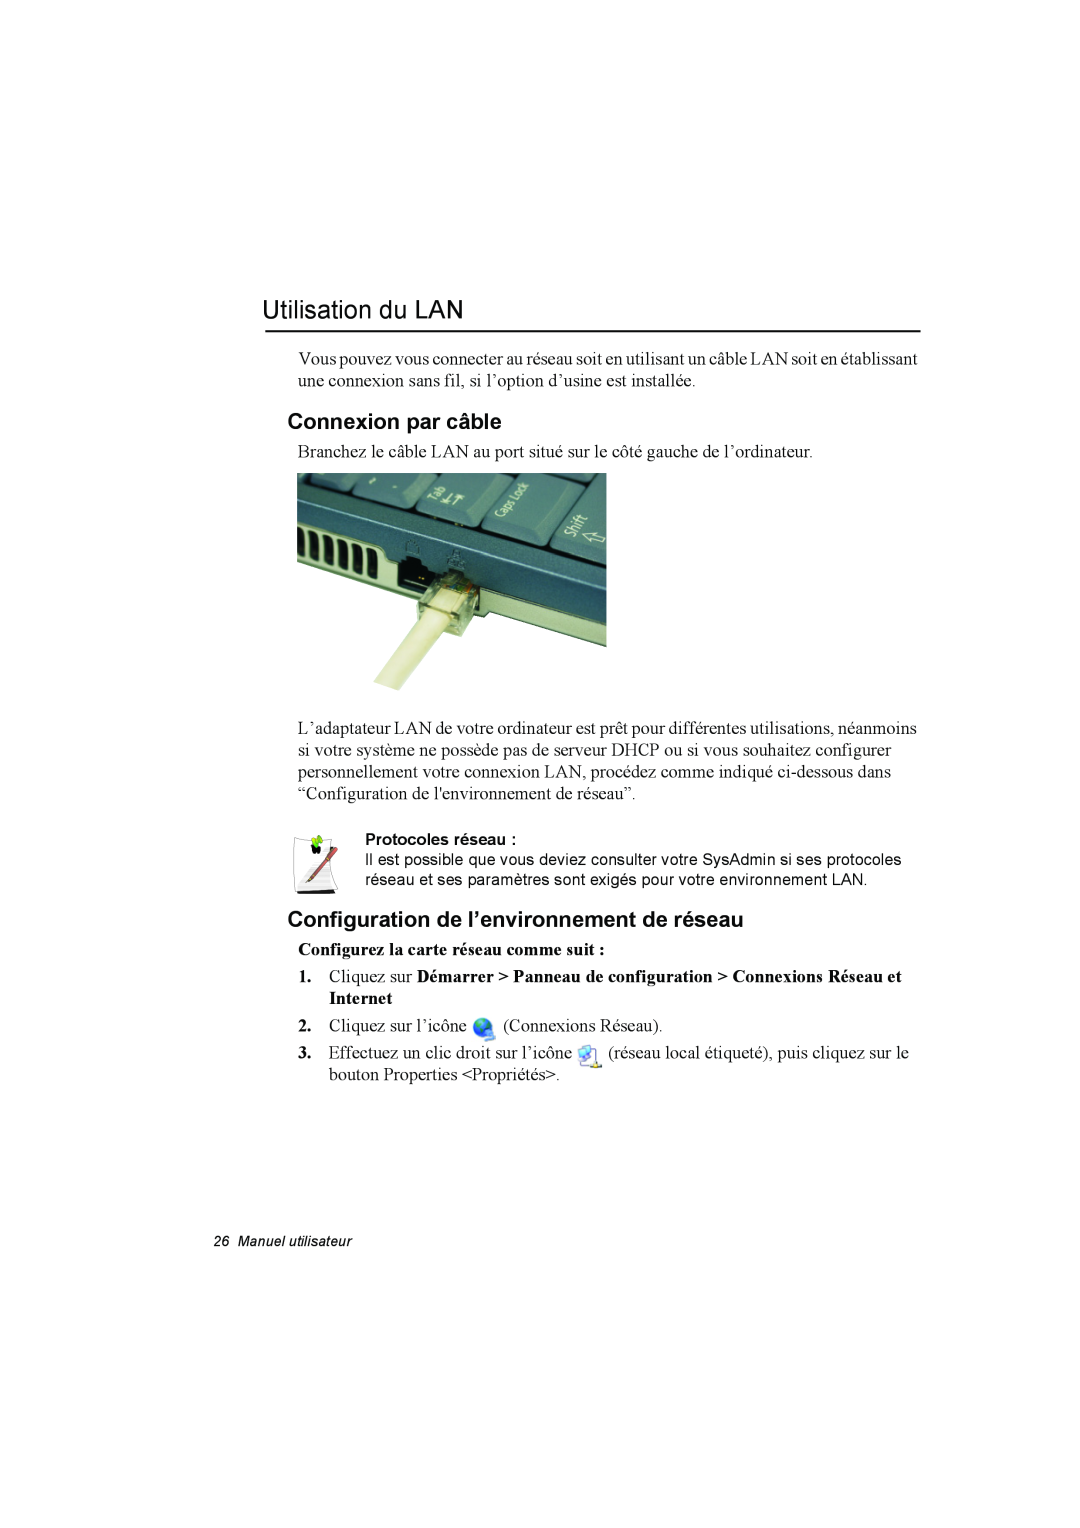 Samsung NP10FJ00FE/SEF manual Utilisation du LAN, Connexion par câble, Configuration de l’environnement de réseau, Internet 